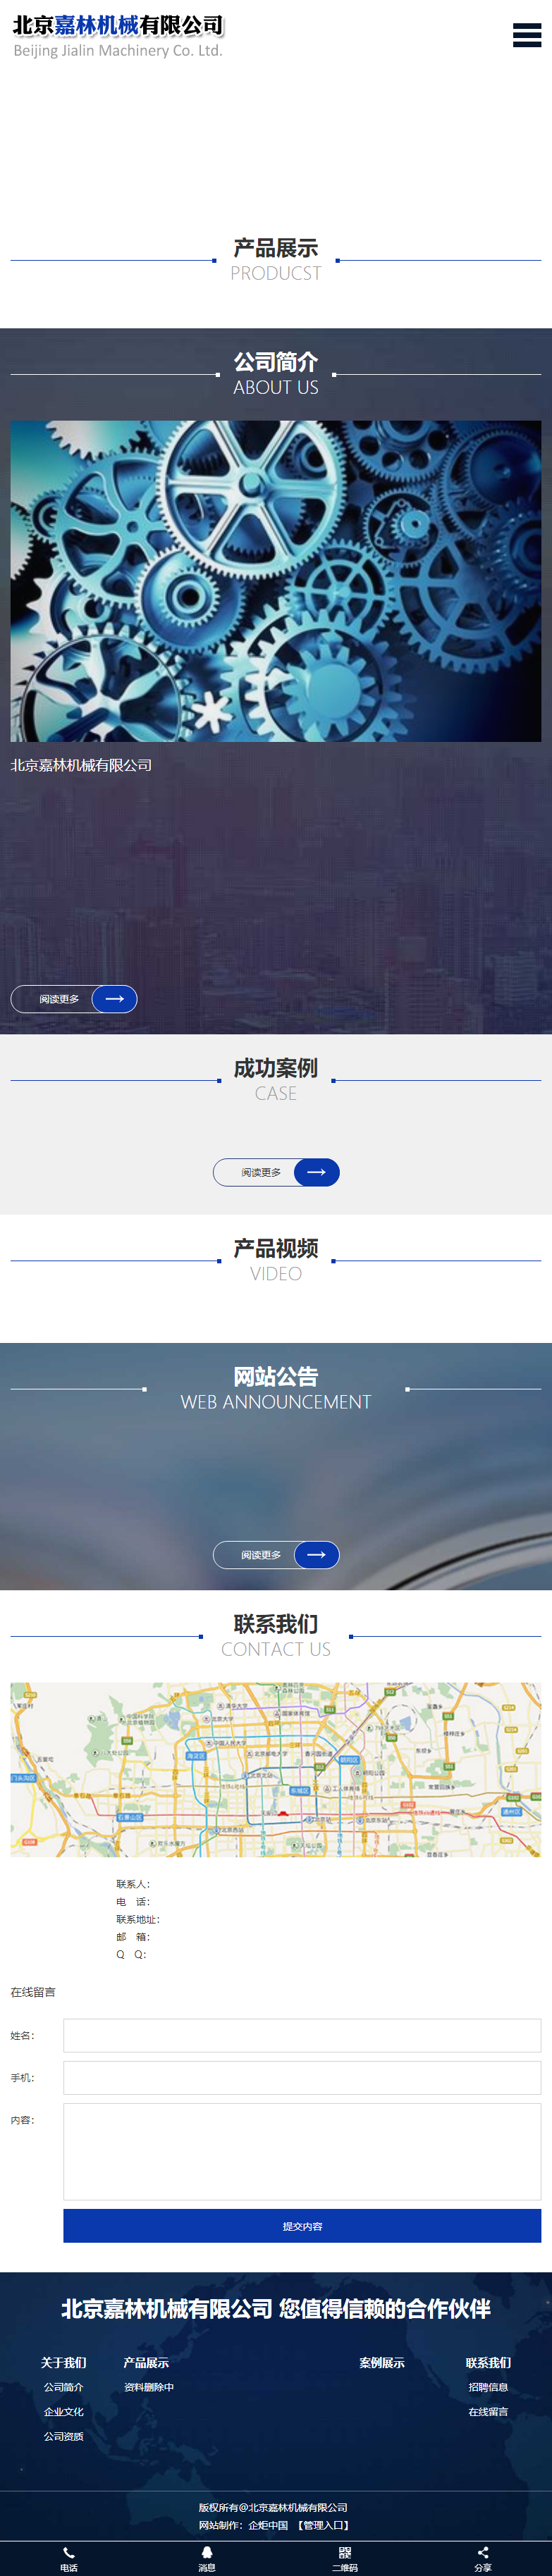 北京嘉林机械有限公司网站案例